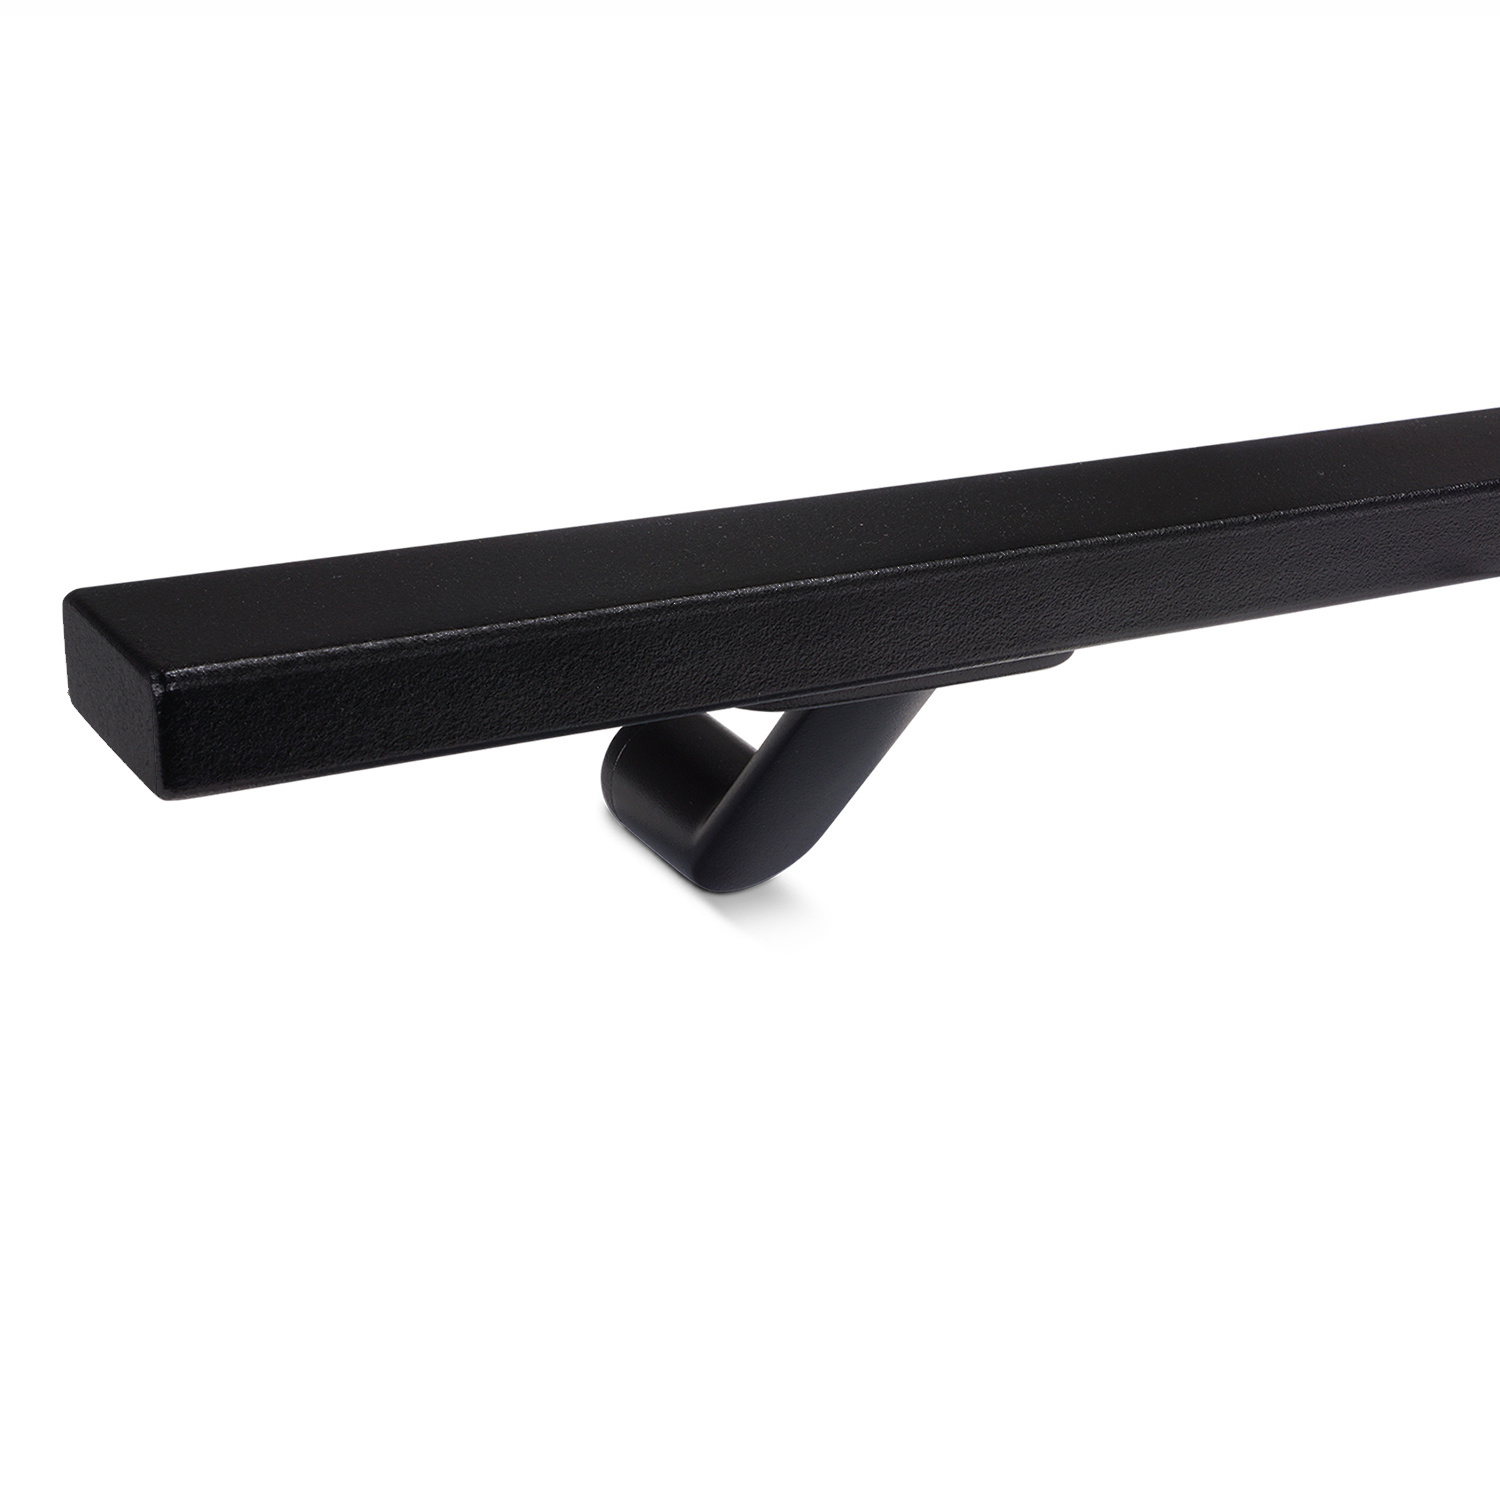  Handlauf schwarz beschichtet viereckig 40x15 Modell 7 - Rechteckige Treppengeländer - Treppenhandlauf mit schwarzer Pulverbeschichtung RAL 9005